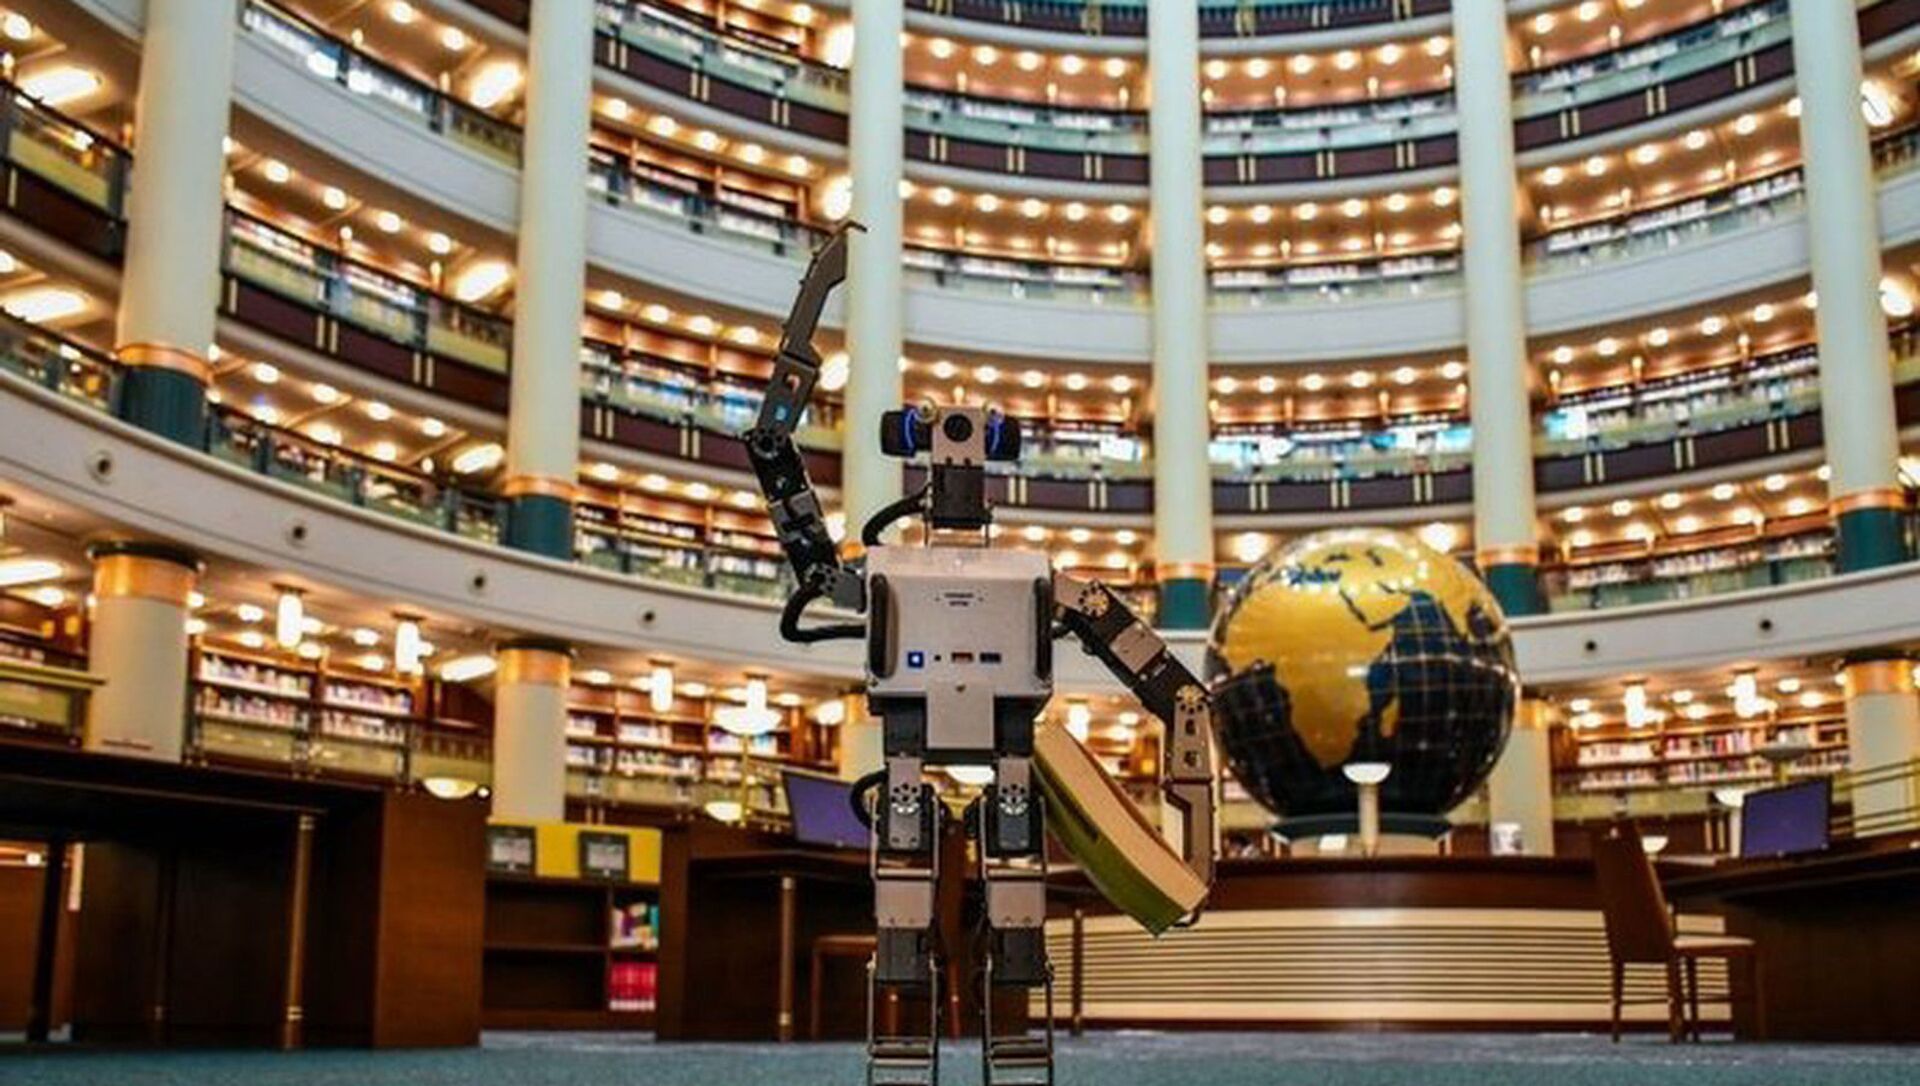 Millet Kütüphanesi'nin yapay zekalı robotu - Sputnik Türkiye, 1920, 23.02.2021